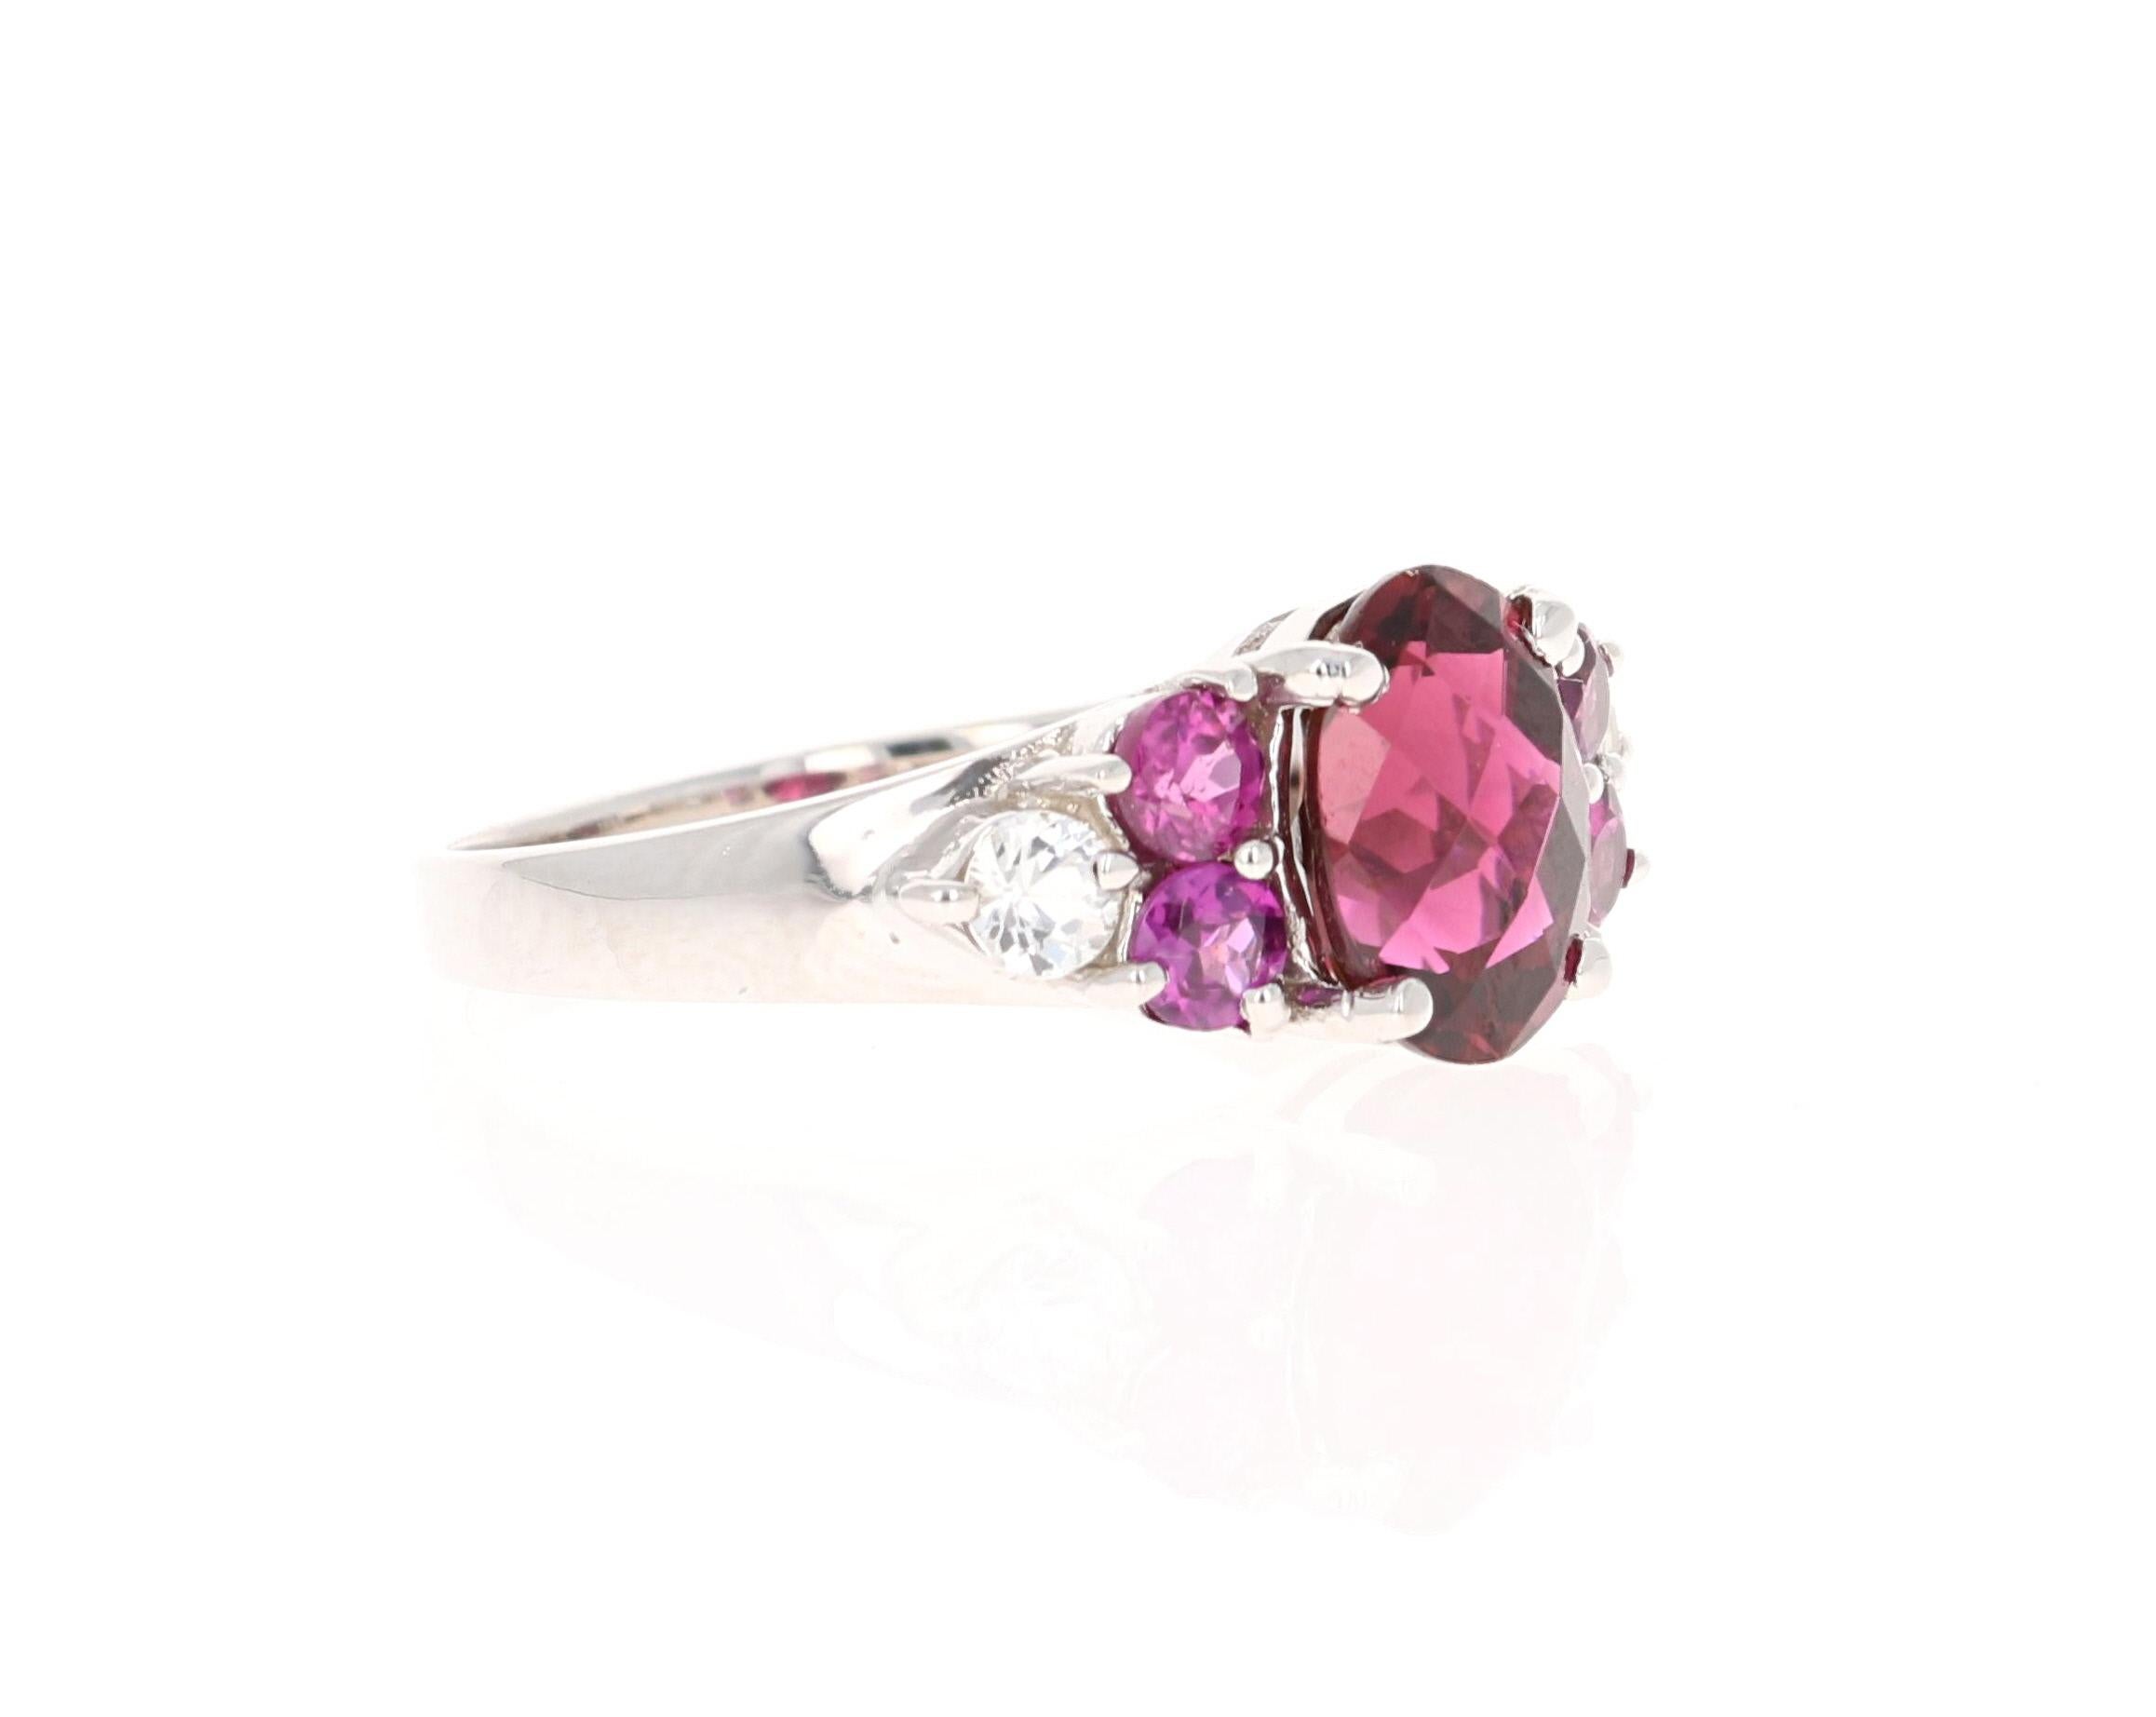 Dieser Ring hat einen violetten Turmalin im Oval-Checkered-Schliff mit einem Gewicht von 2,50 Karat. Es gibt 4 lila Granate und 2 weiße Saphire mit einem Gewicht von 1,26 Karat. Das Gesamtkaratgewicht des Rings beträgt 3,76 Karat. 

Dieser Ring ist